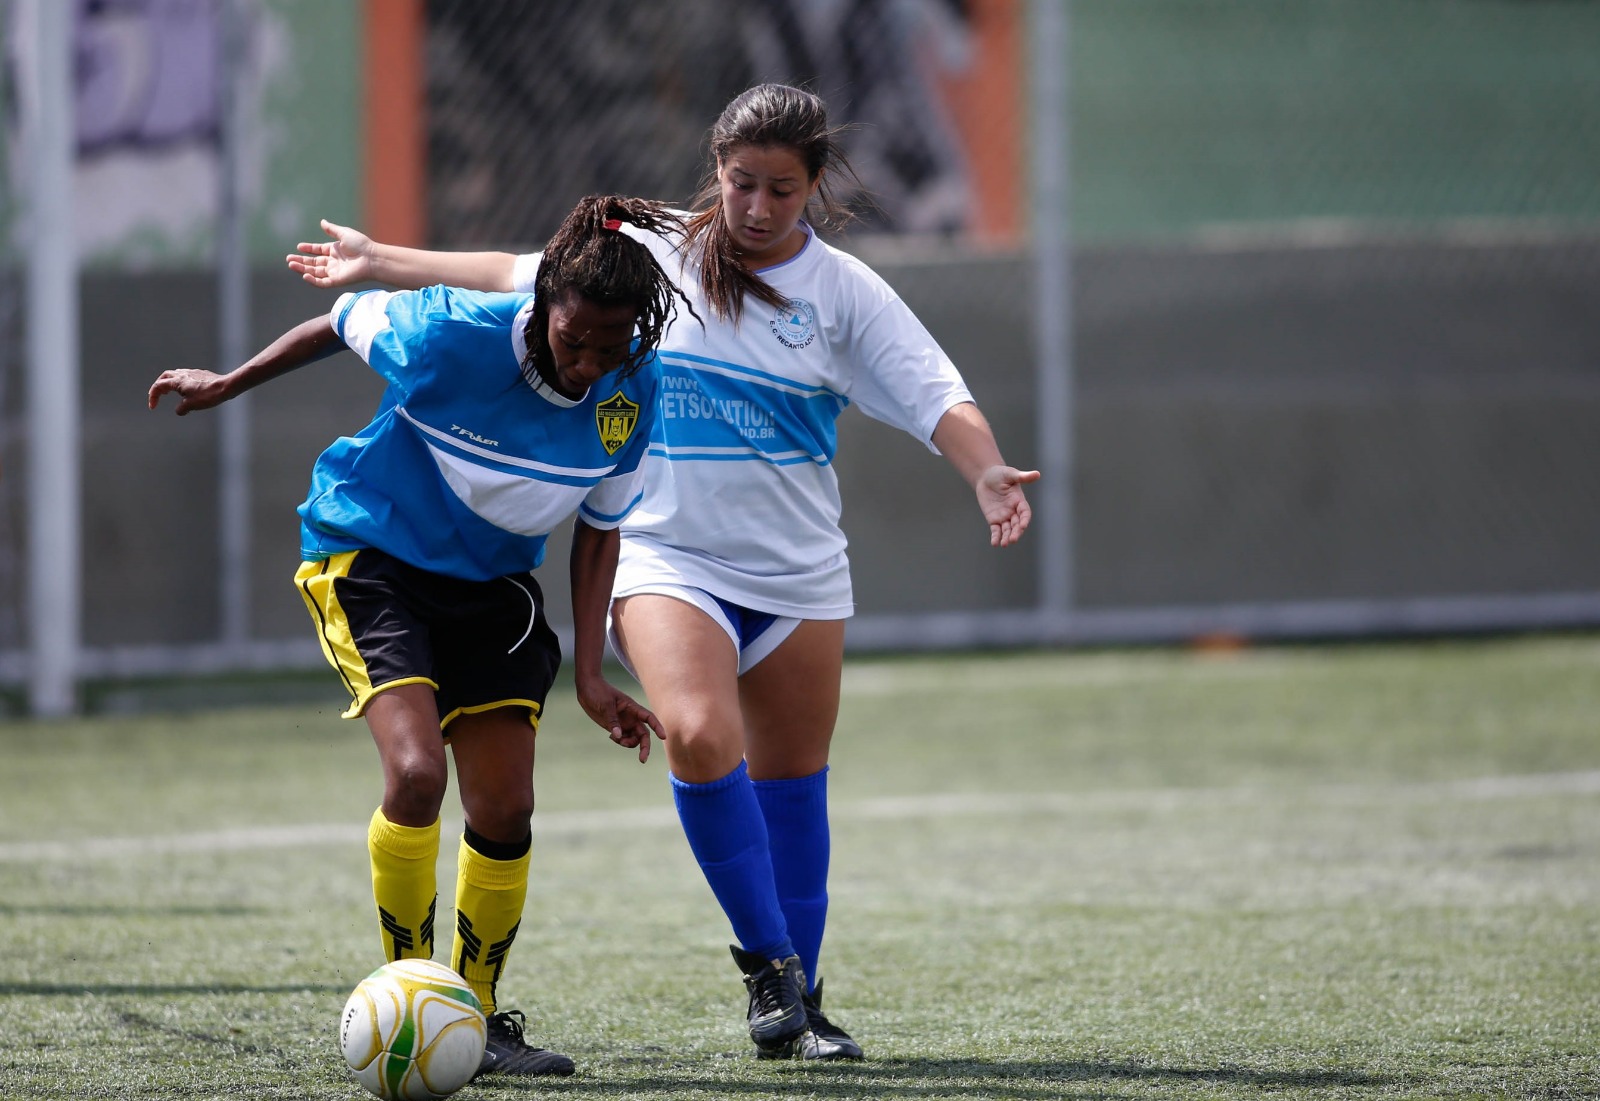 Sedese inicia segunda etapa de pesquisa para desenvolver futebol feminino em Minas Gerais